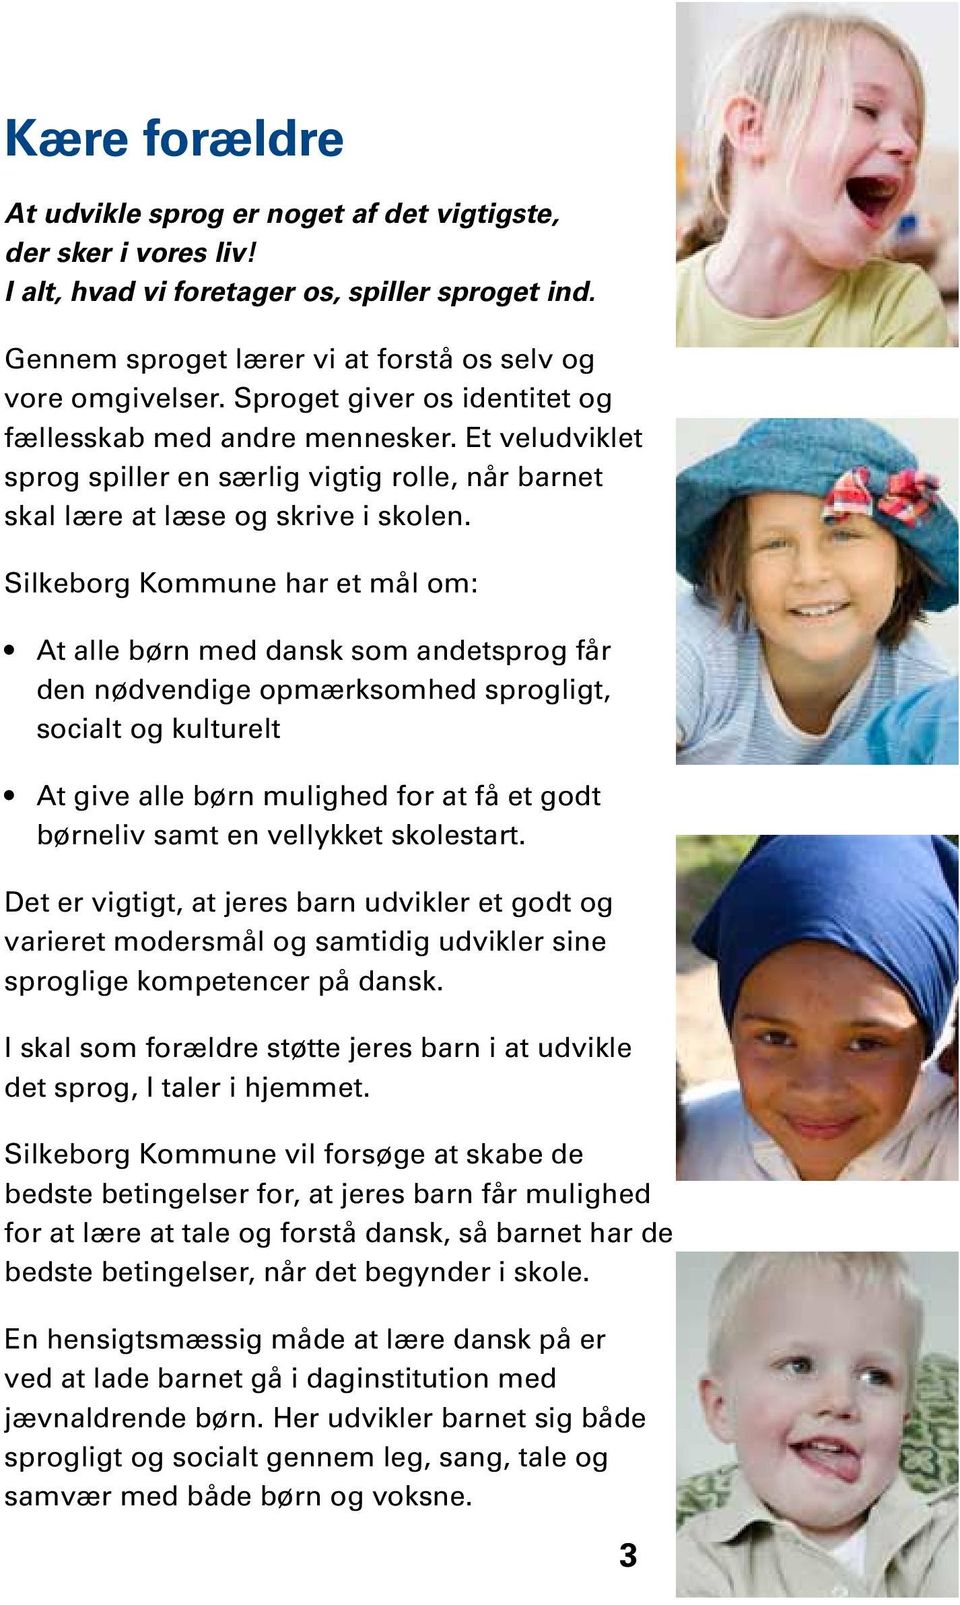 Silkeborg Kommune har et mål om: At alle børn med dansk som andetsprog får den nødvendige opmærksomhed sprogligt, socialt og kulturelt At give alle børn mulighed for at få et godt børneliv samt en